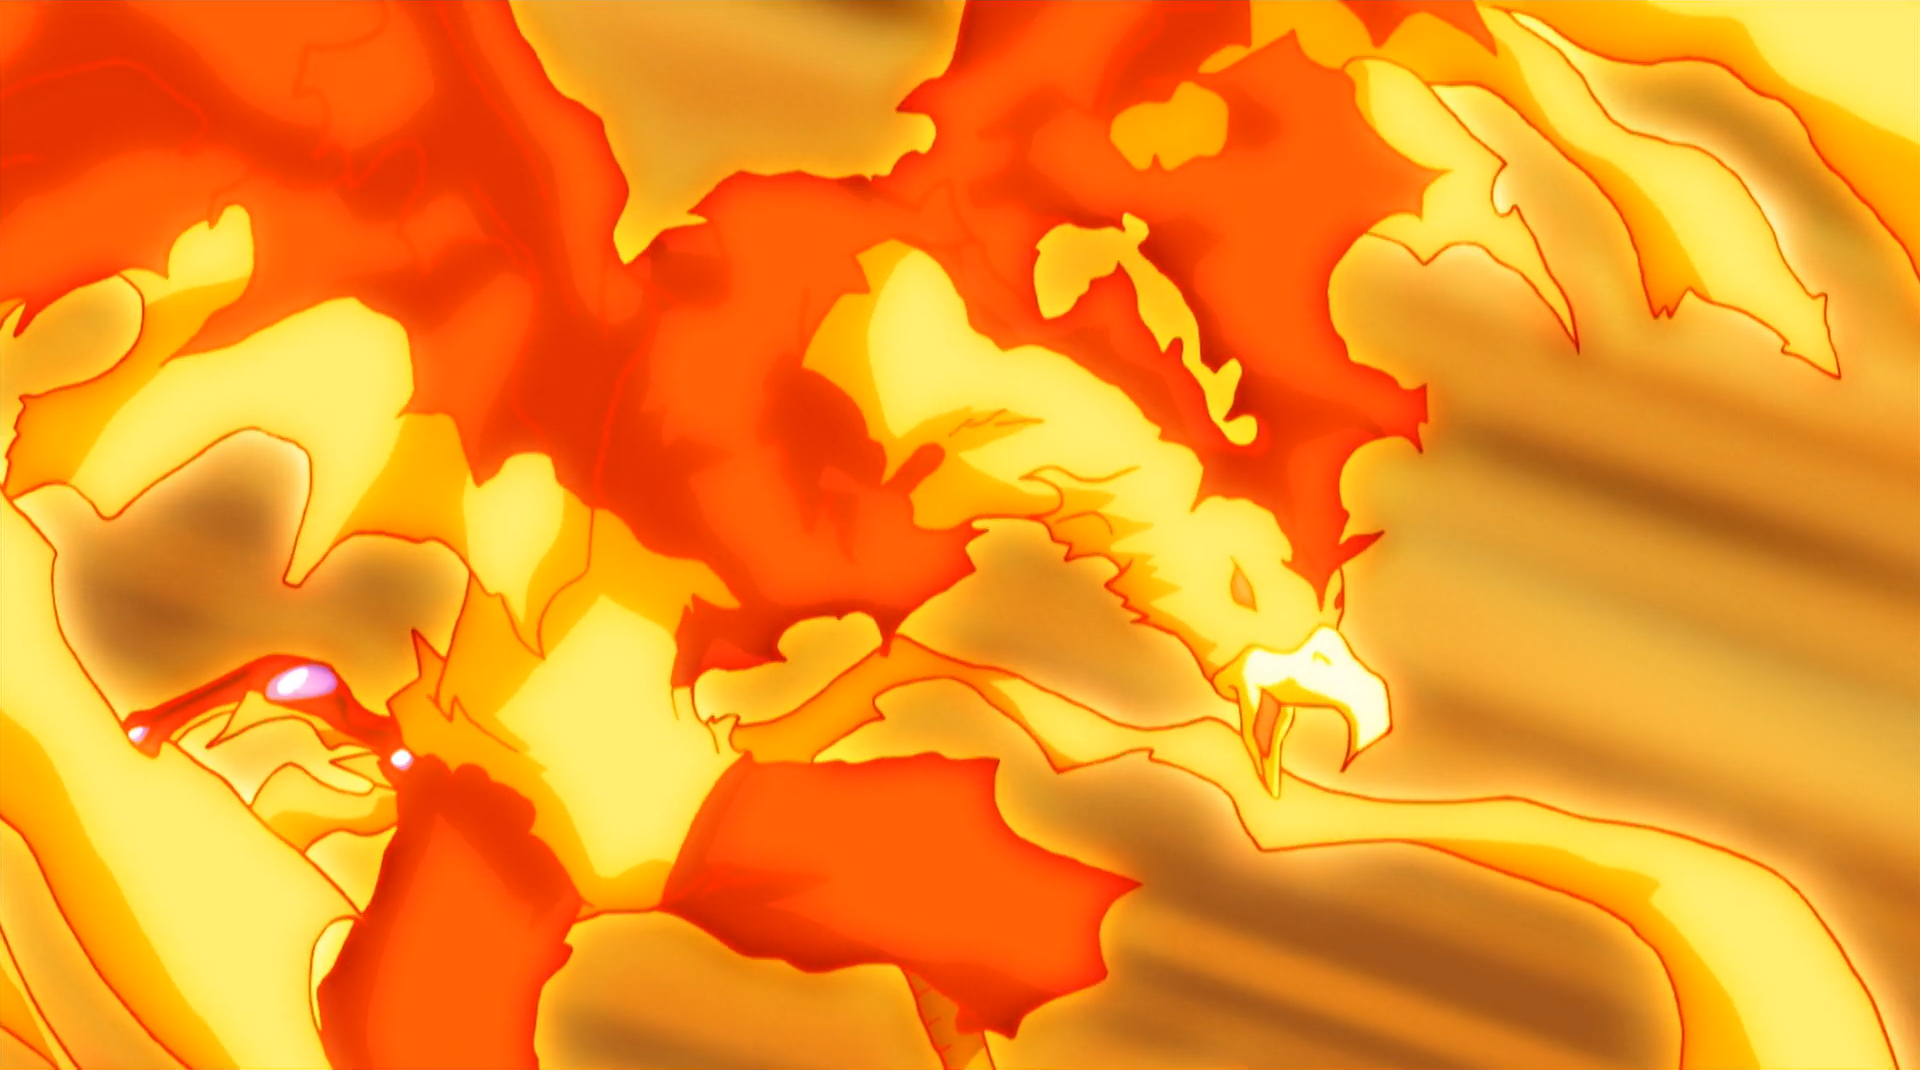 Burn Fireblaze 135MS/Gallery | Beyblade Wiki | Fandom powered by Wikia